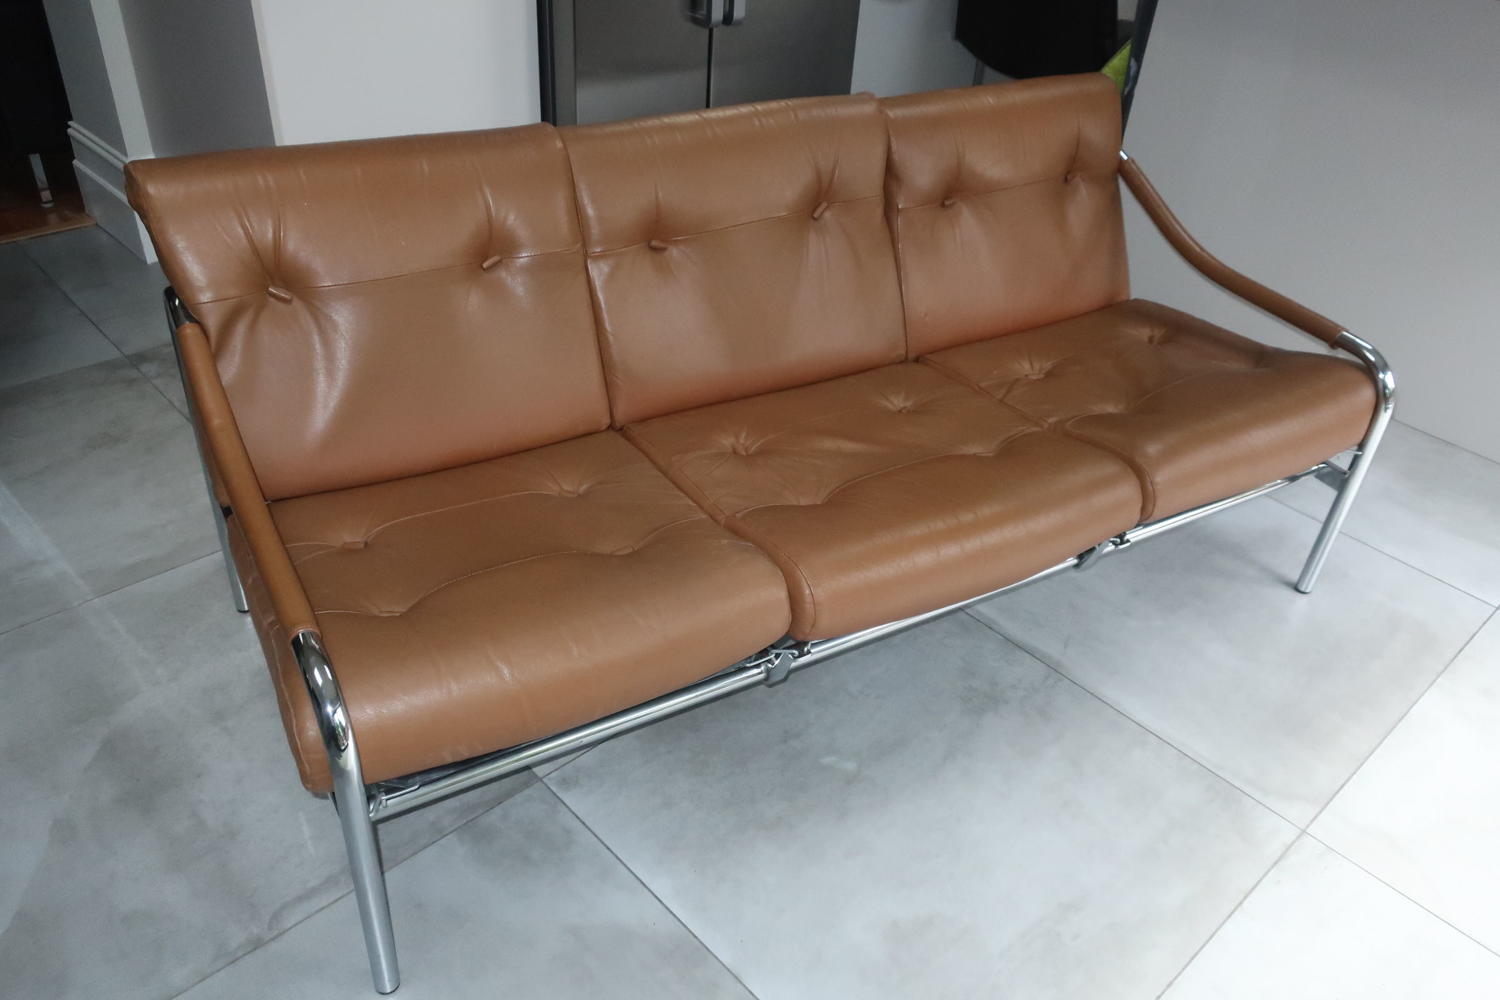 Pieff three seater tan leather sofa